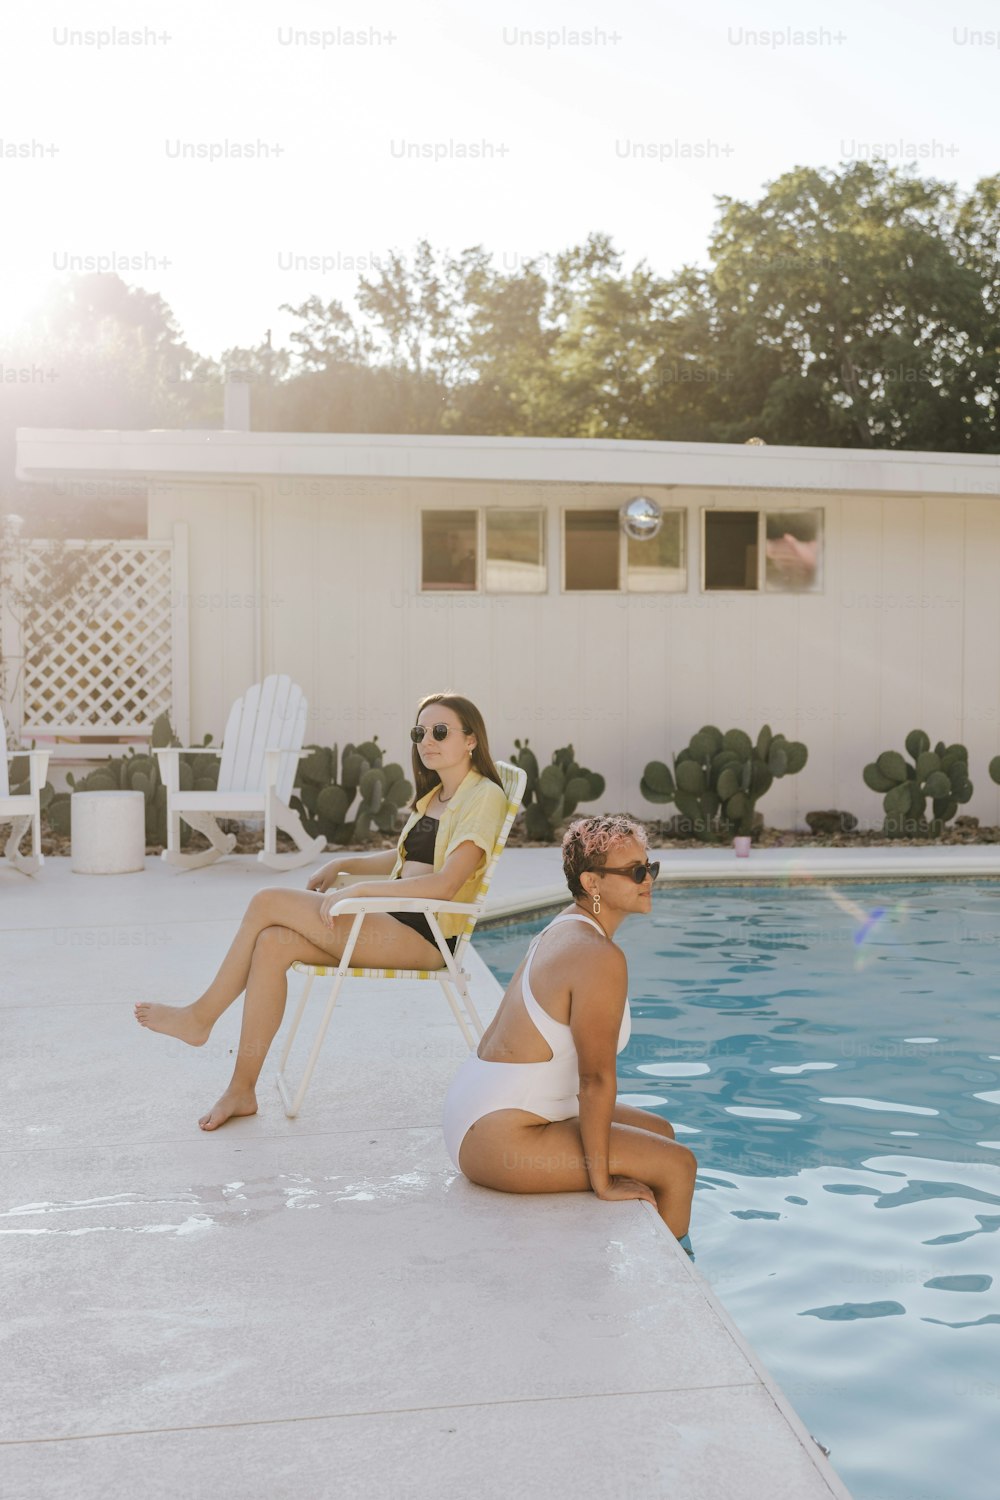 Un paio di donne sedute accanto a una piscina